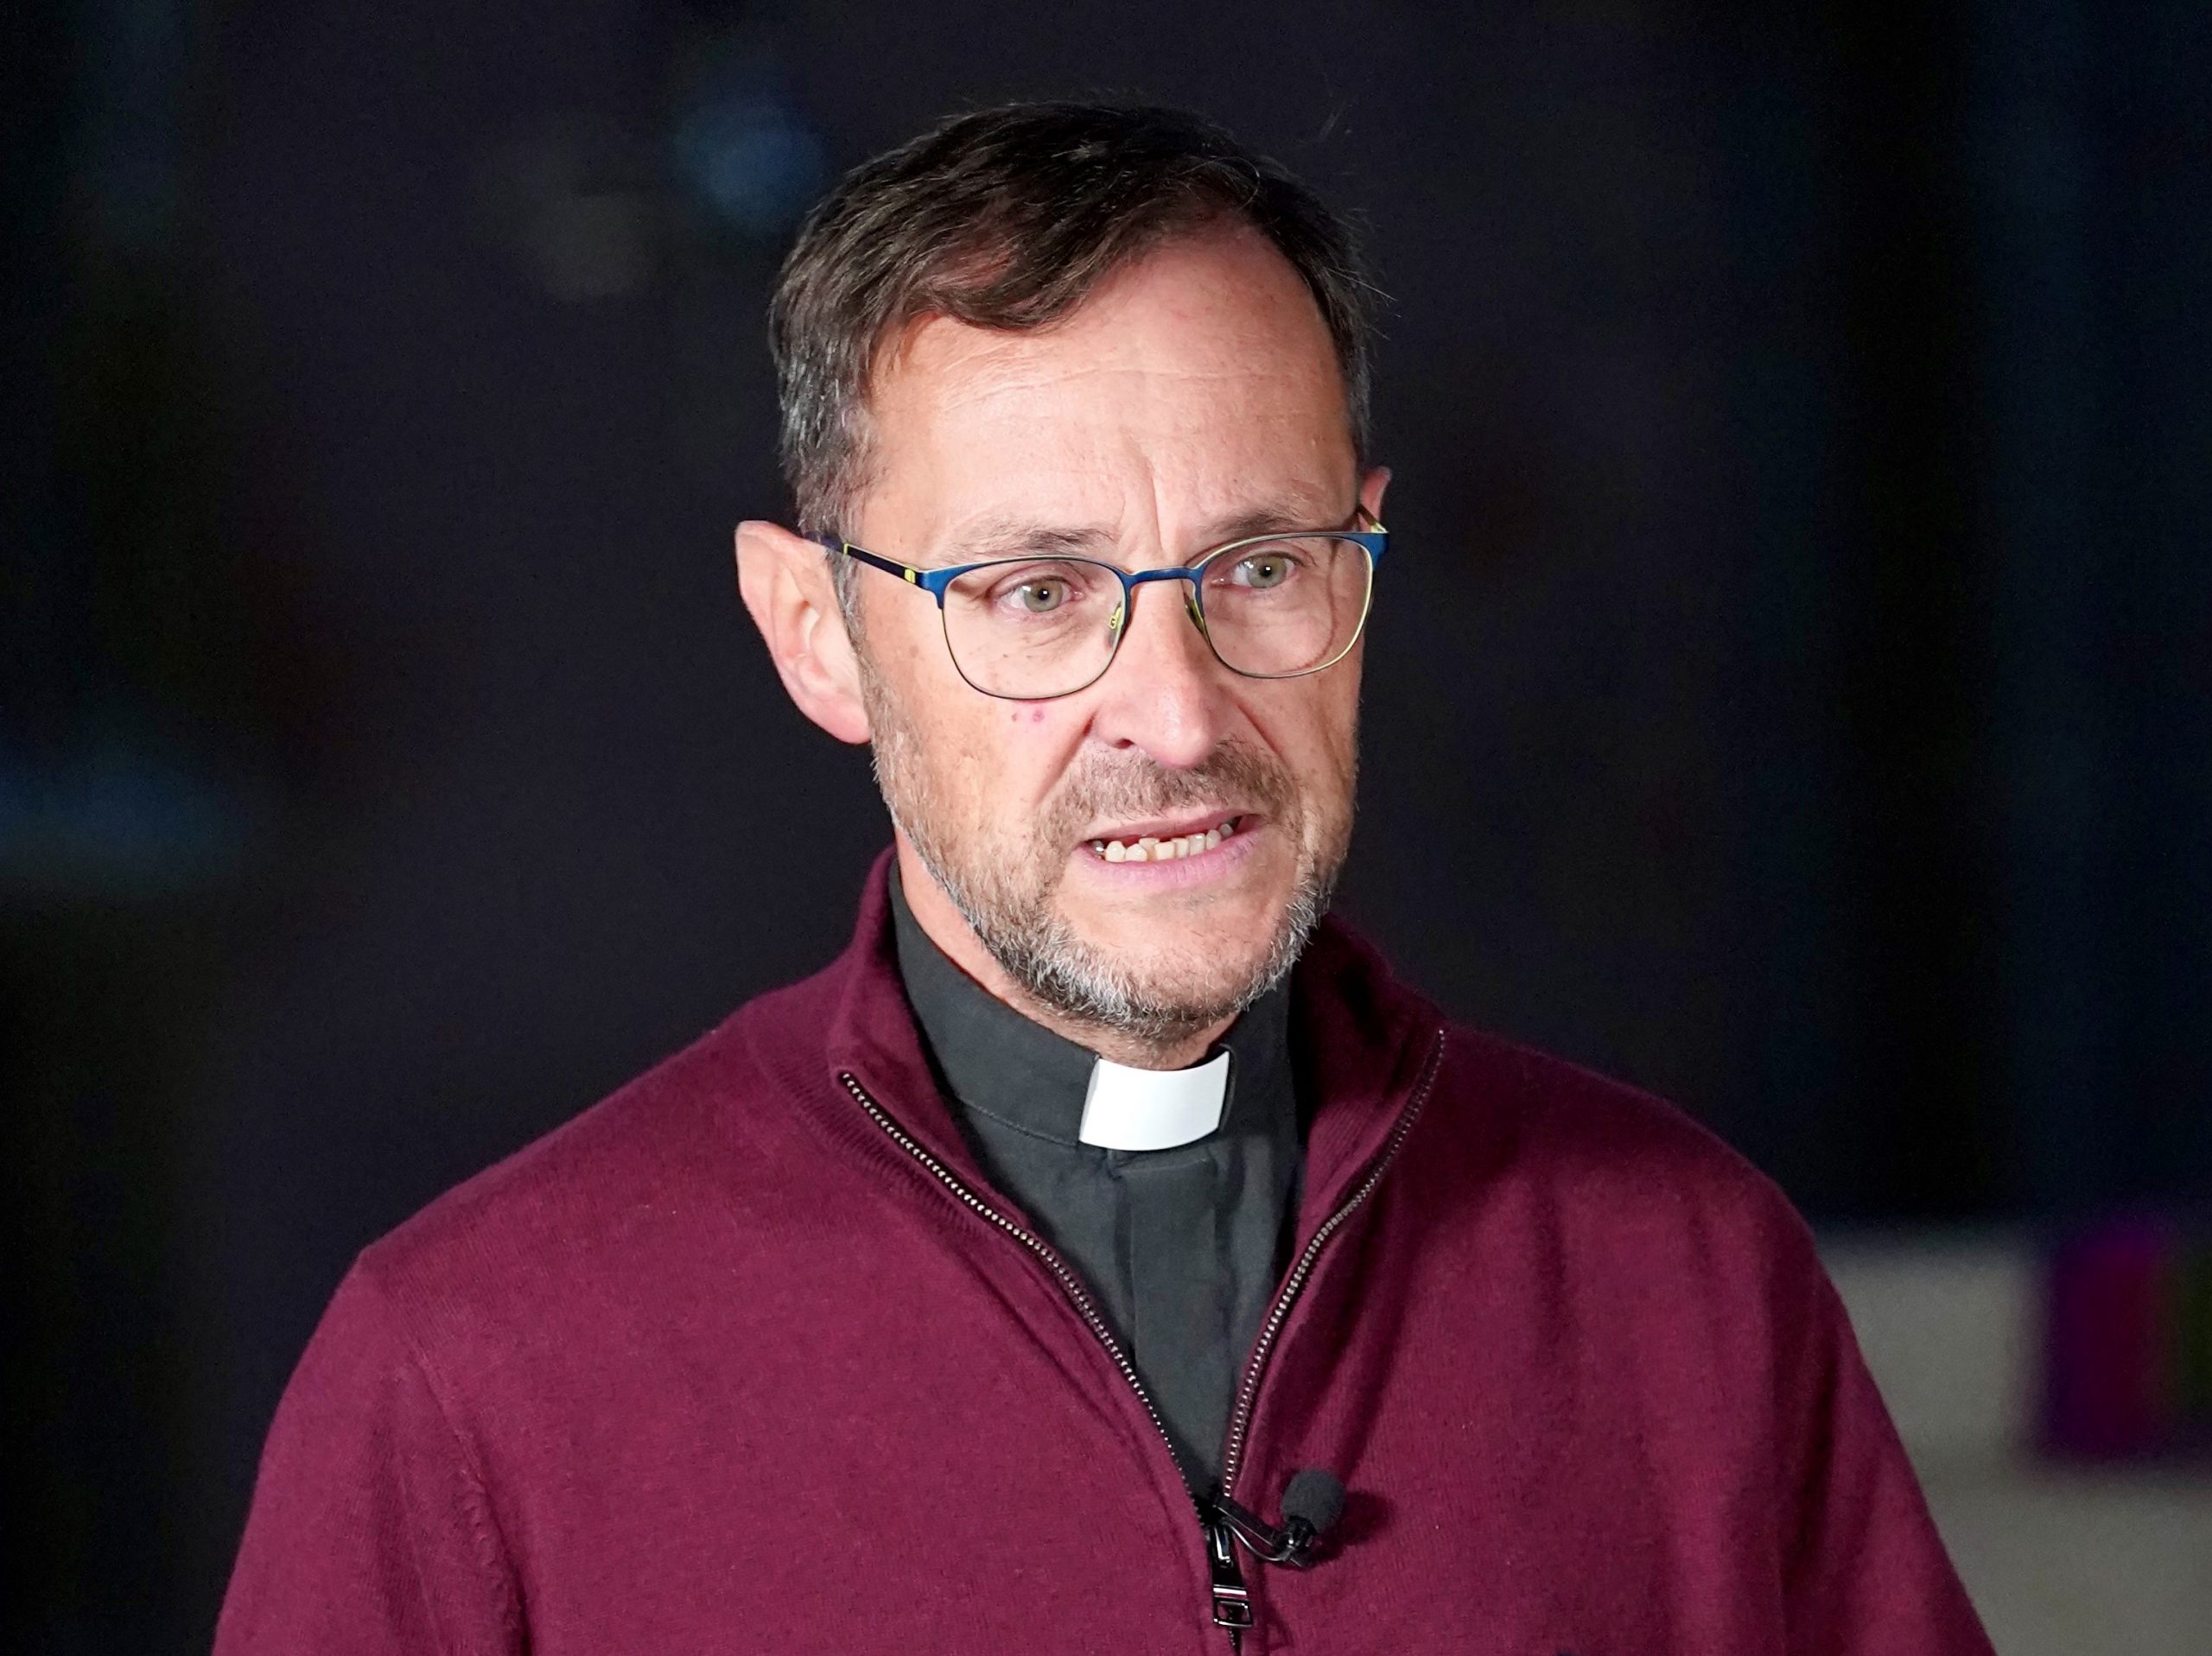 Pfarrer Jörg Meyrer mit rotem Pullover vor schwarzem Hintergrund